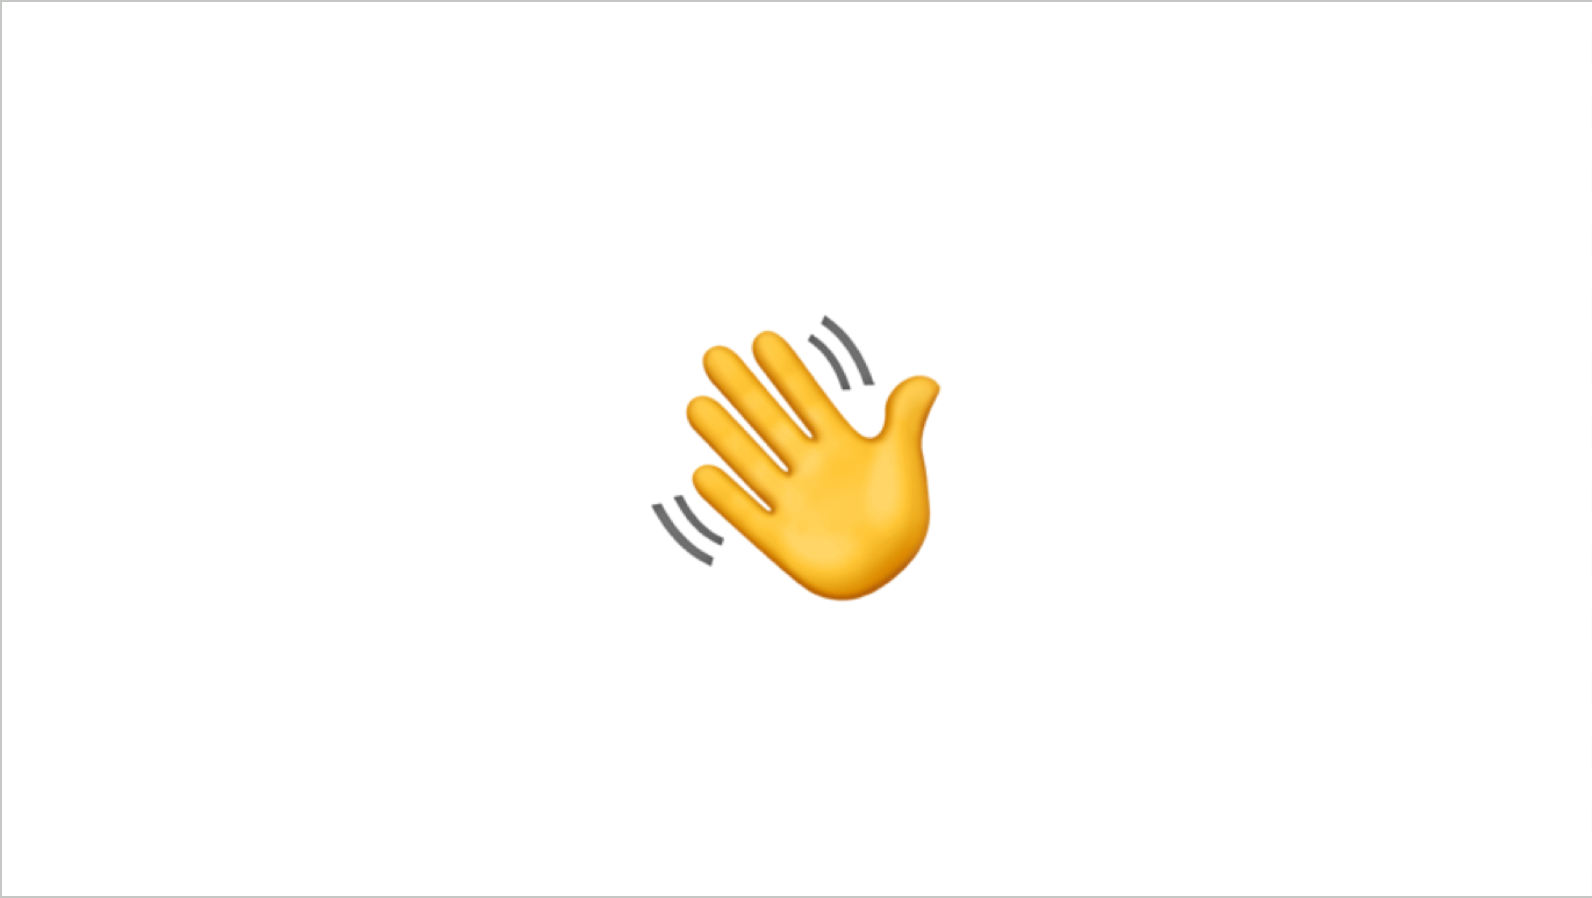 A waving hand emoji